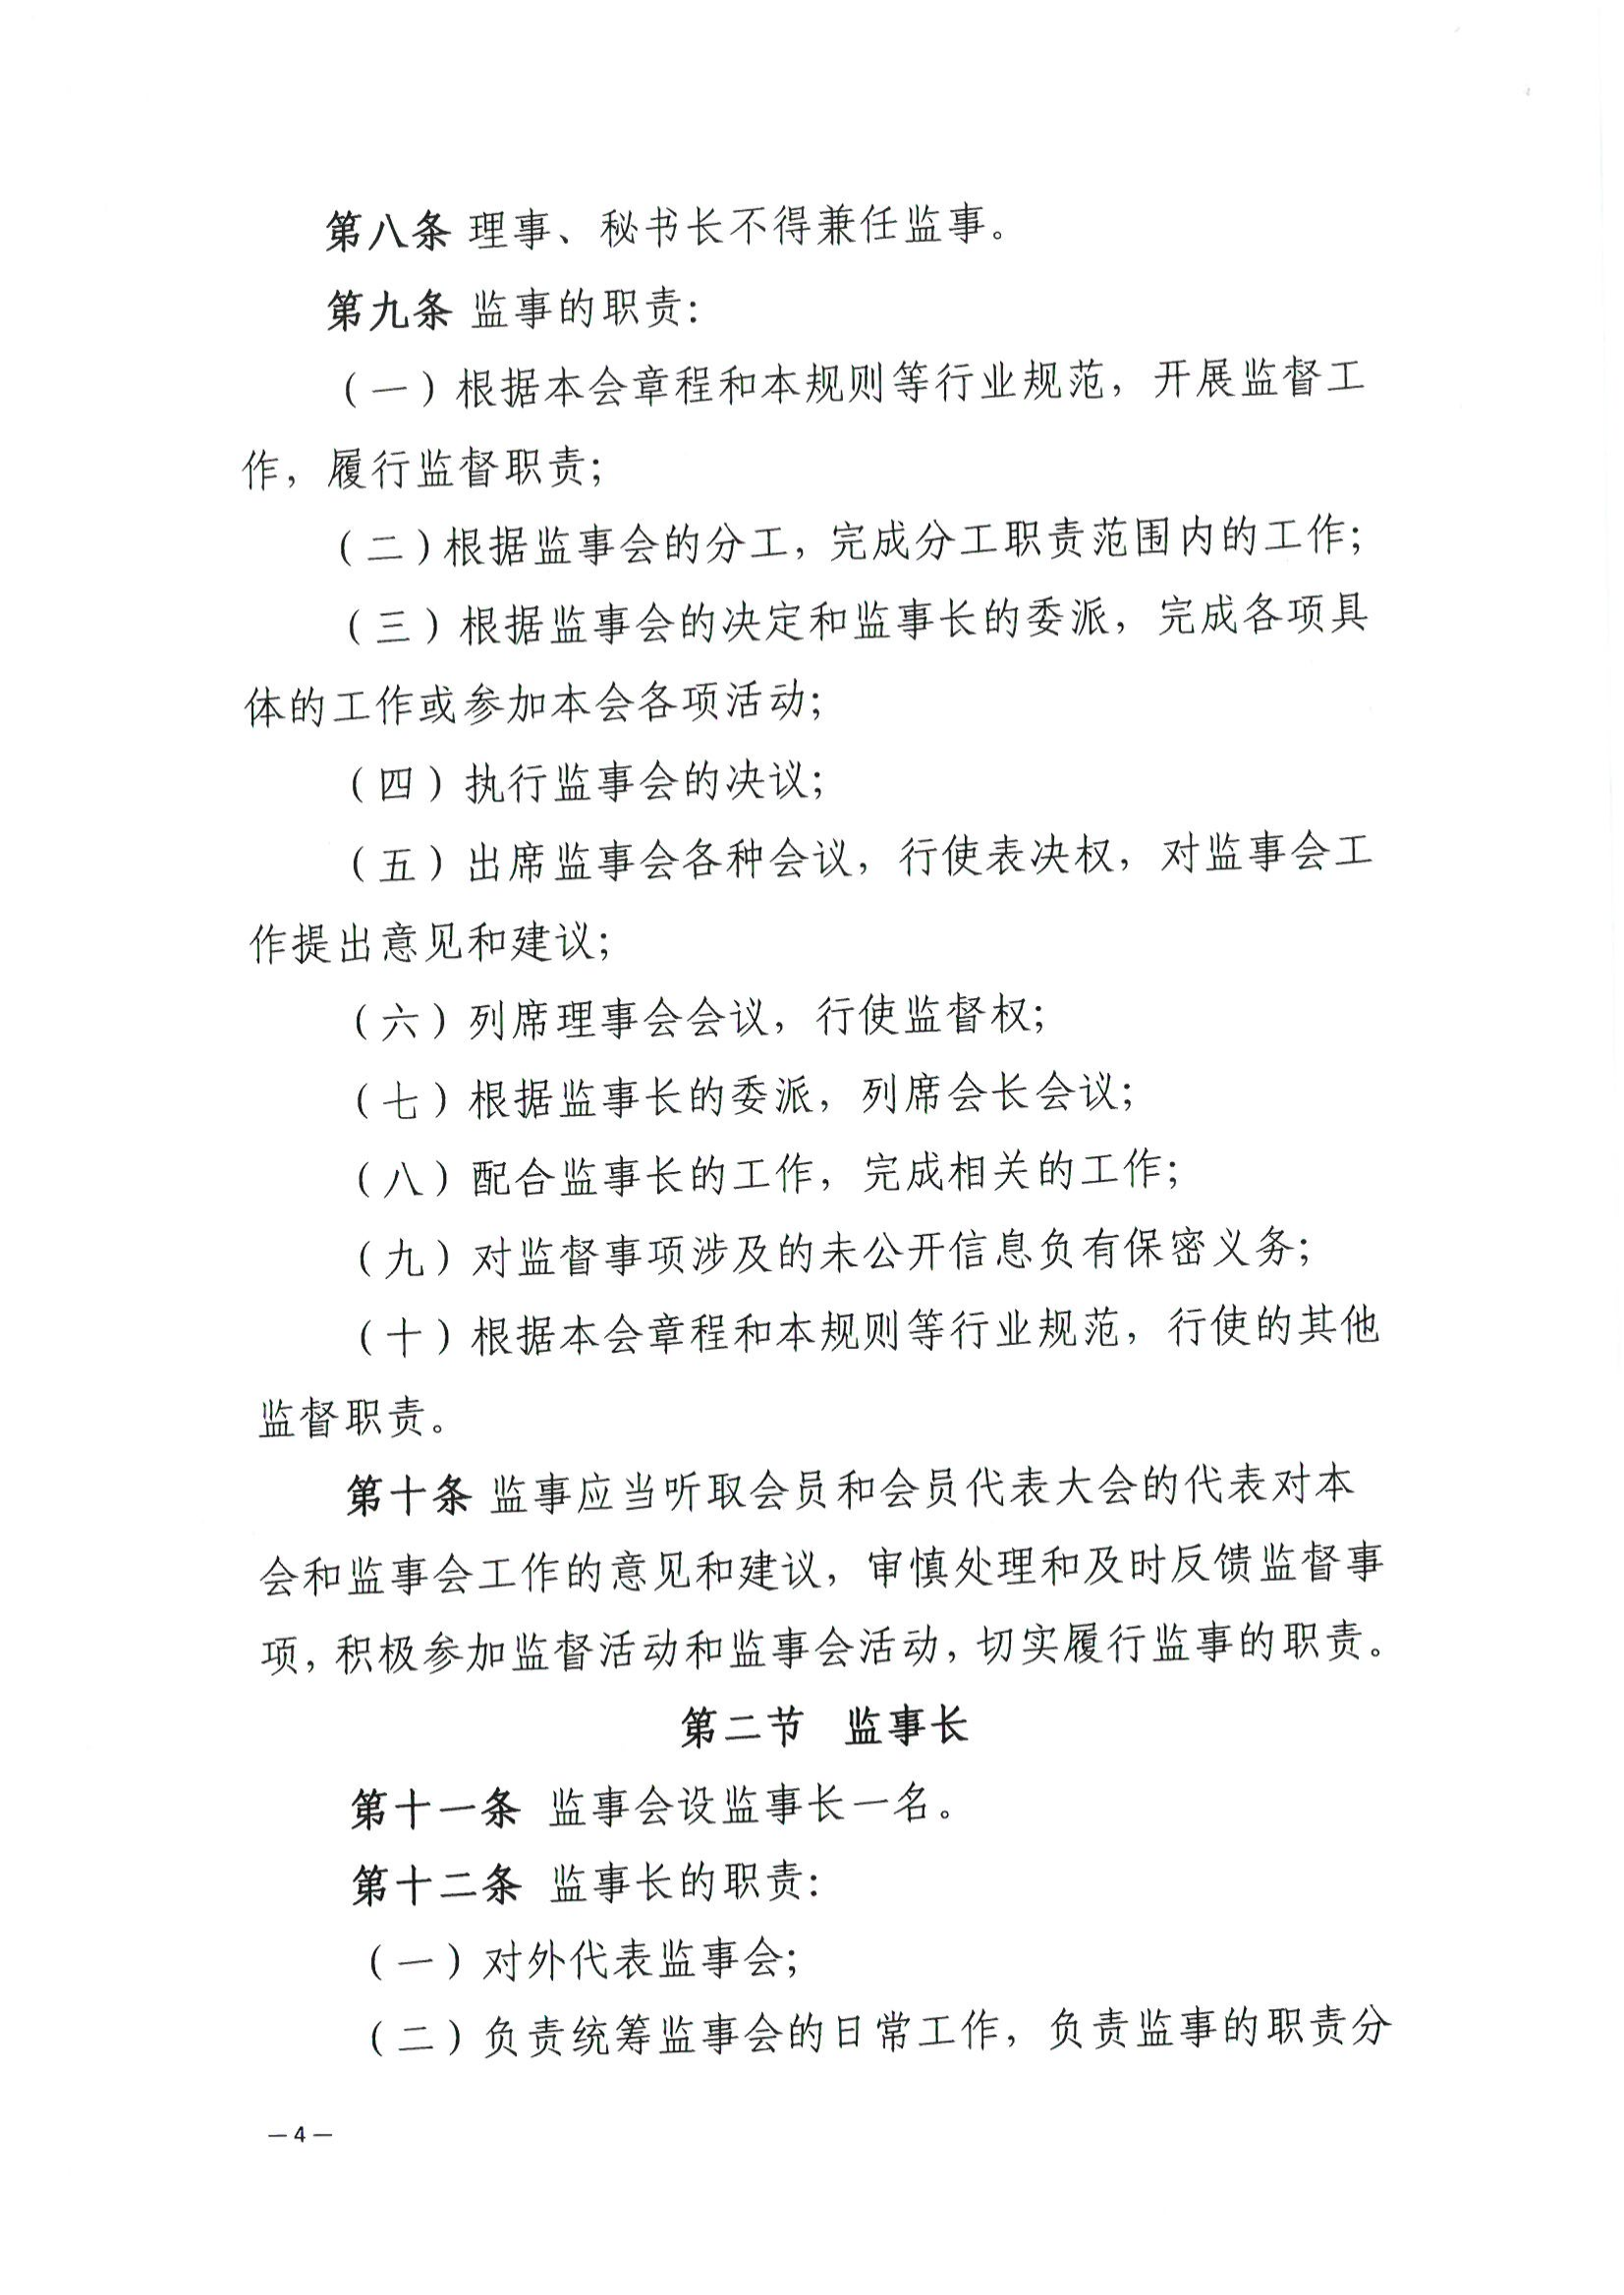 京公协字【2021】32号 北京市公证协会关于印发北京市公证协会监事会工作规则的通知_05